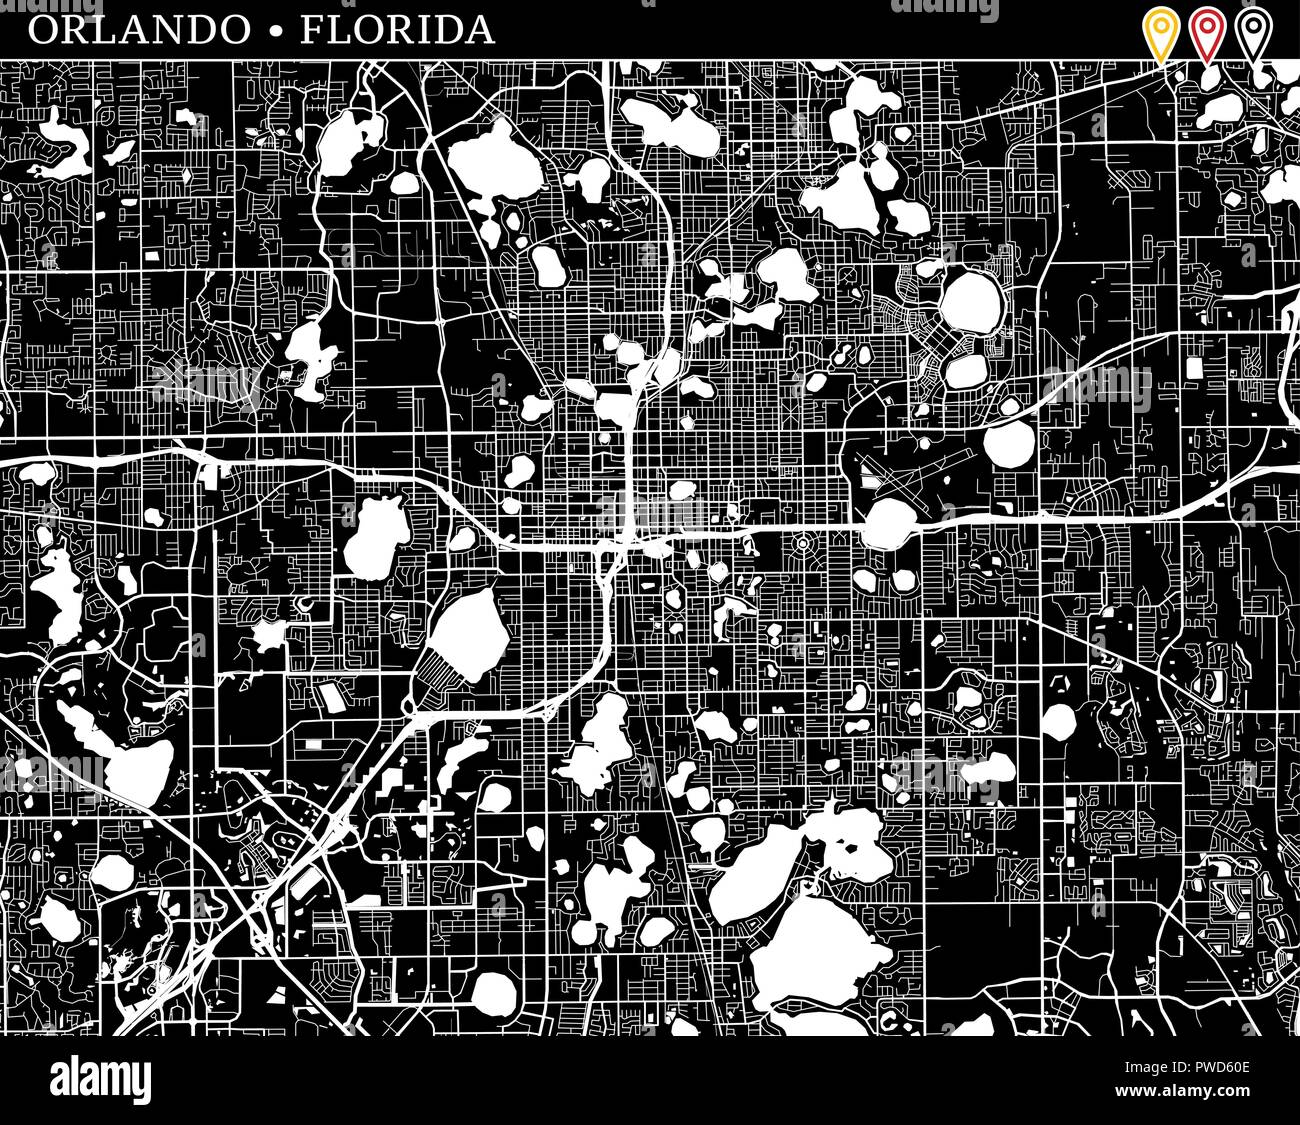 Einfache Karte von Orlando, Florida, USA. Schwarze und weiße Version für saubere Hintergründe und druckt. Diese Karte von Orlando enthält drei Markierungen, die Grou Stock Vektor